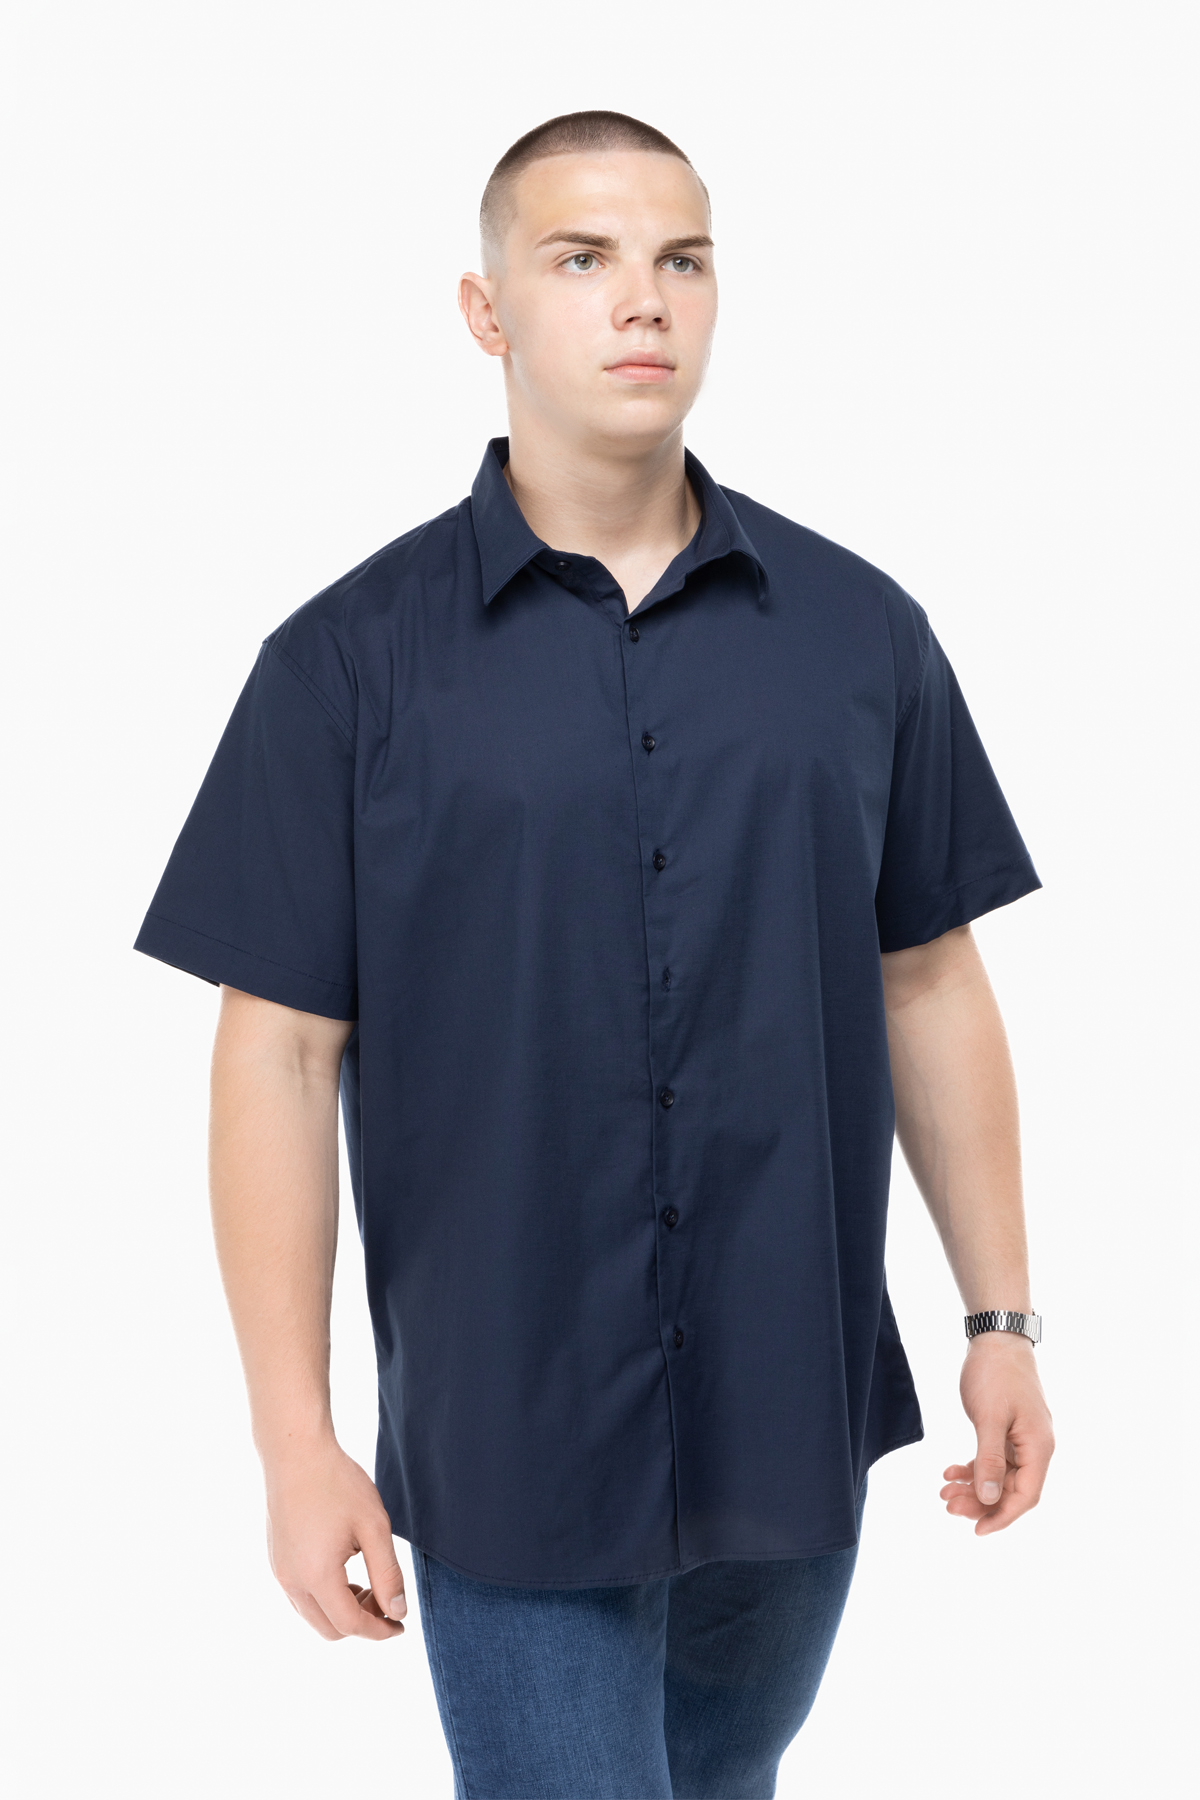 Рубашка классическая однотонная мужская Redpolo 3785 5XL Темно-синий (2000989848165)